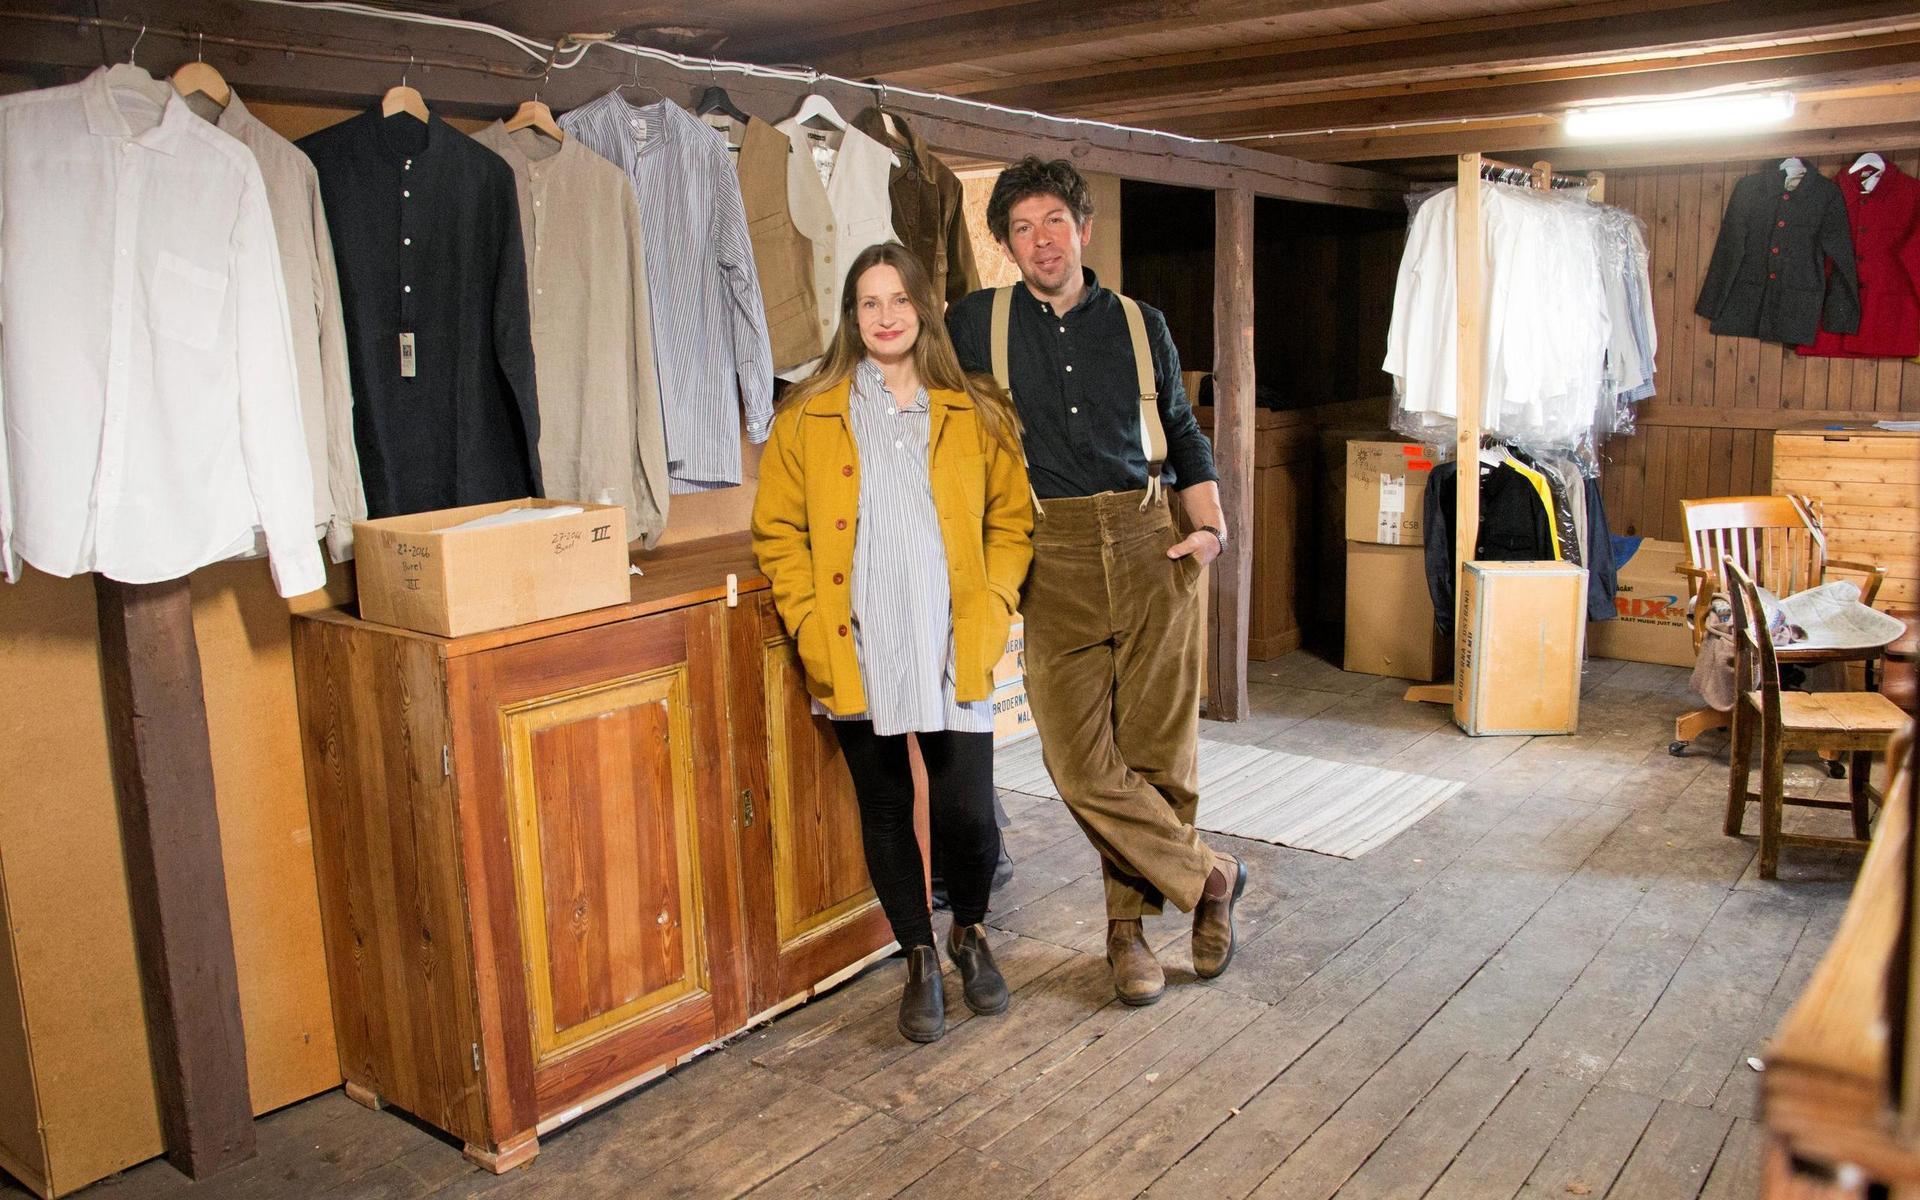 I en lada i Ysby har samboparet Joar Nilsson och Fredrika Byman Moberg satt upp en klädbutik. Än så länge har butiken inga fasta öppettider, hugade kunder får boka tid för provning.